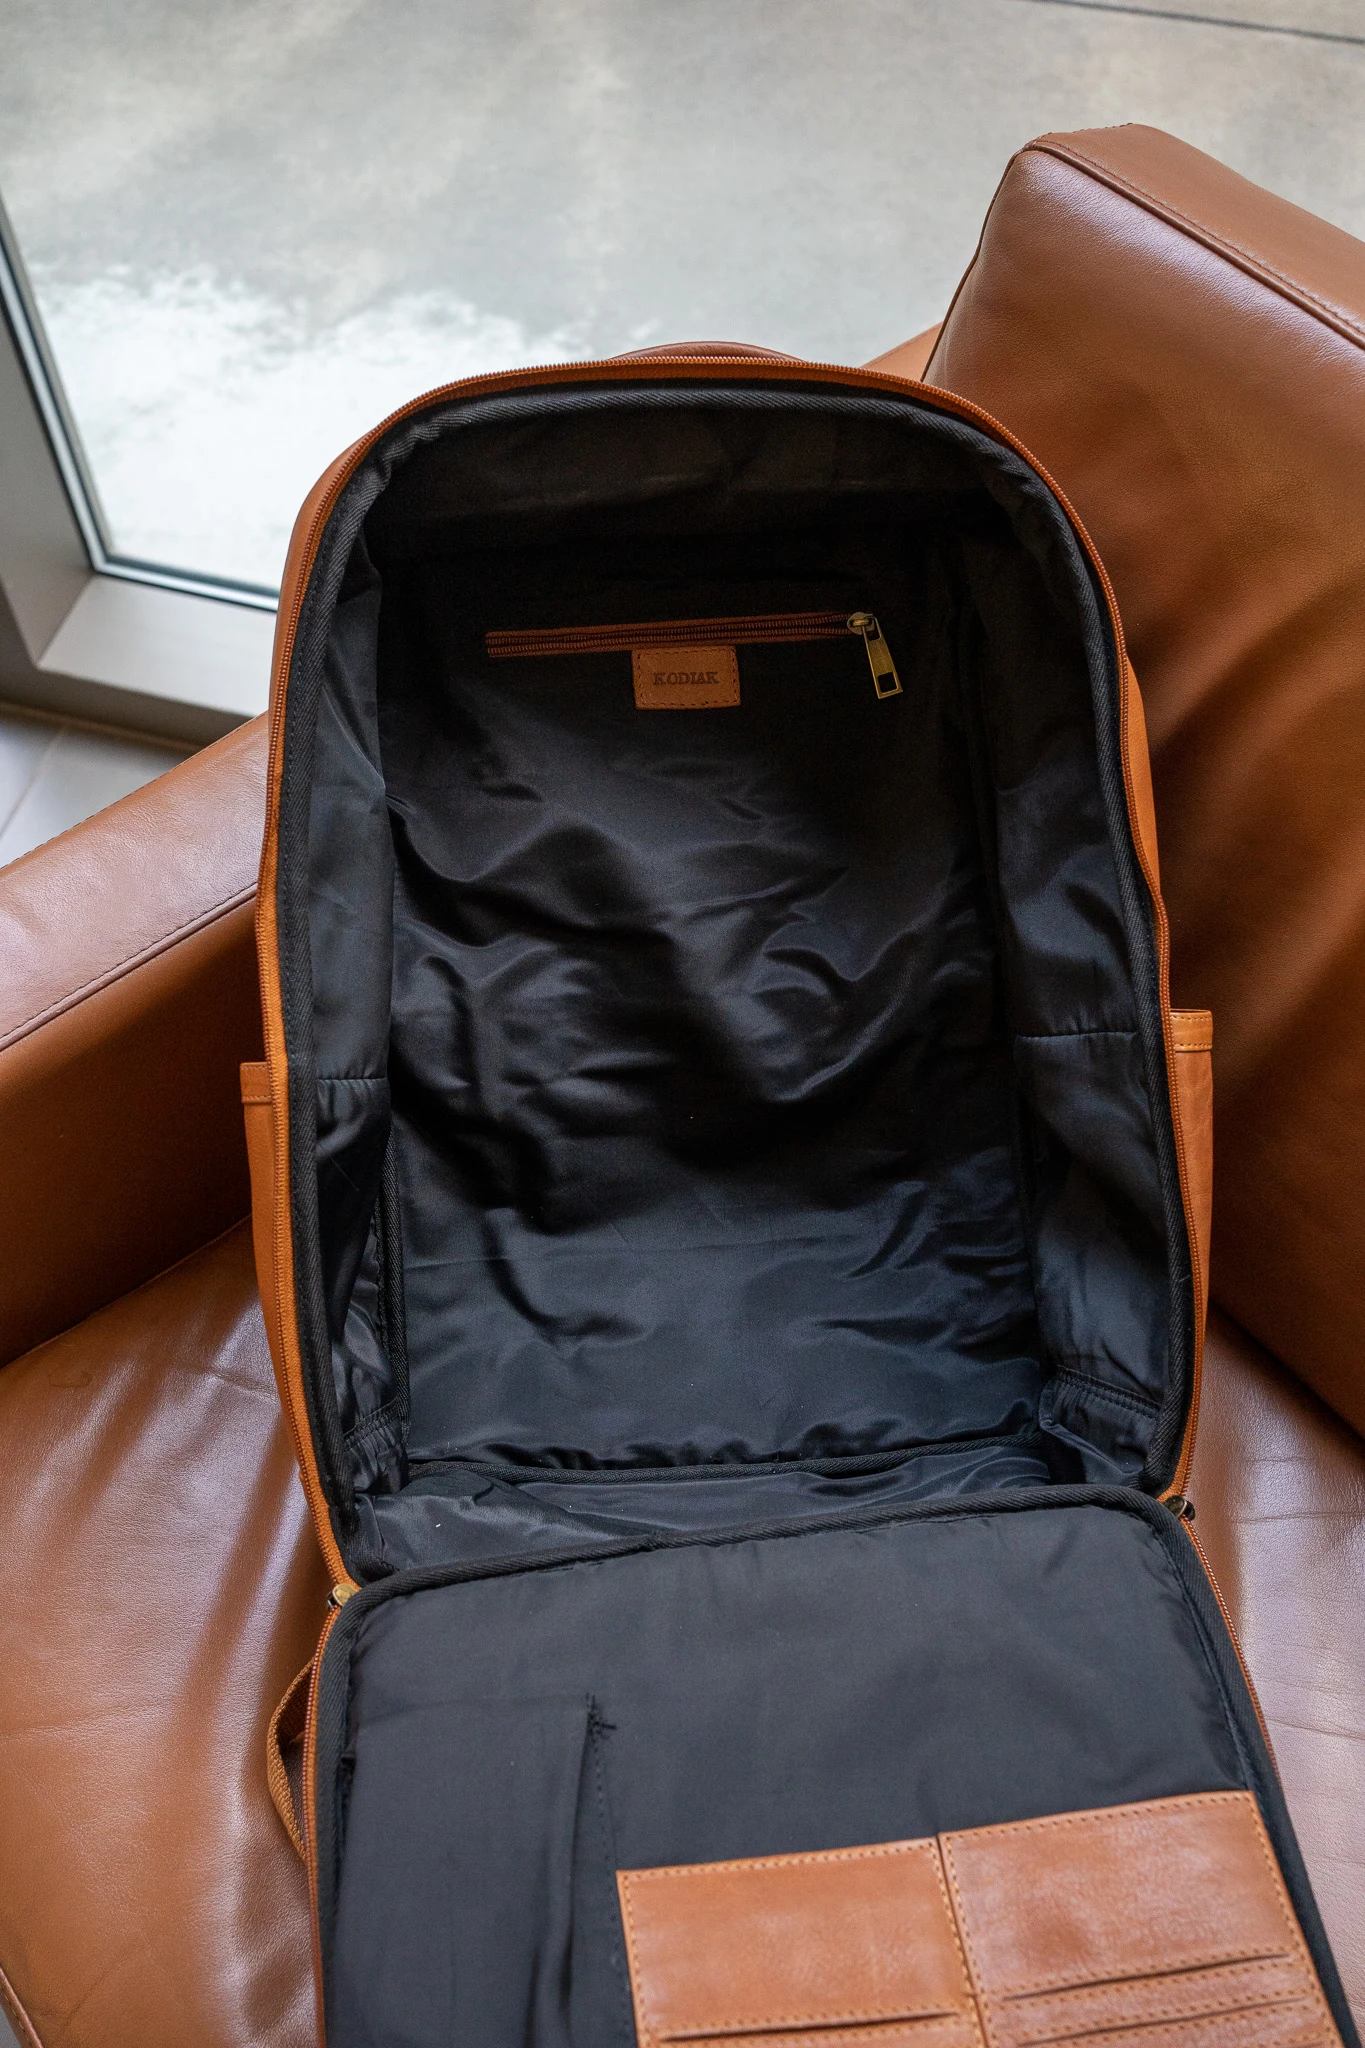 Kodiak Leather Huslia Backpack Review inside